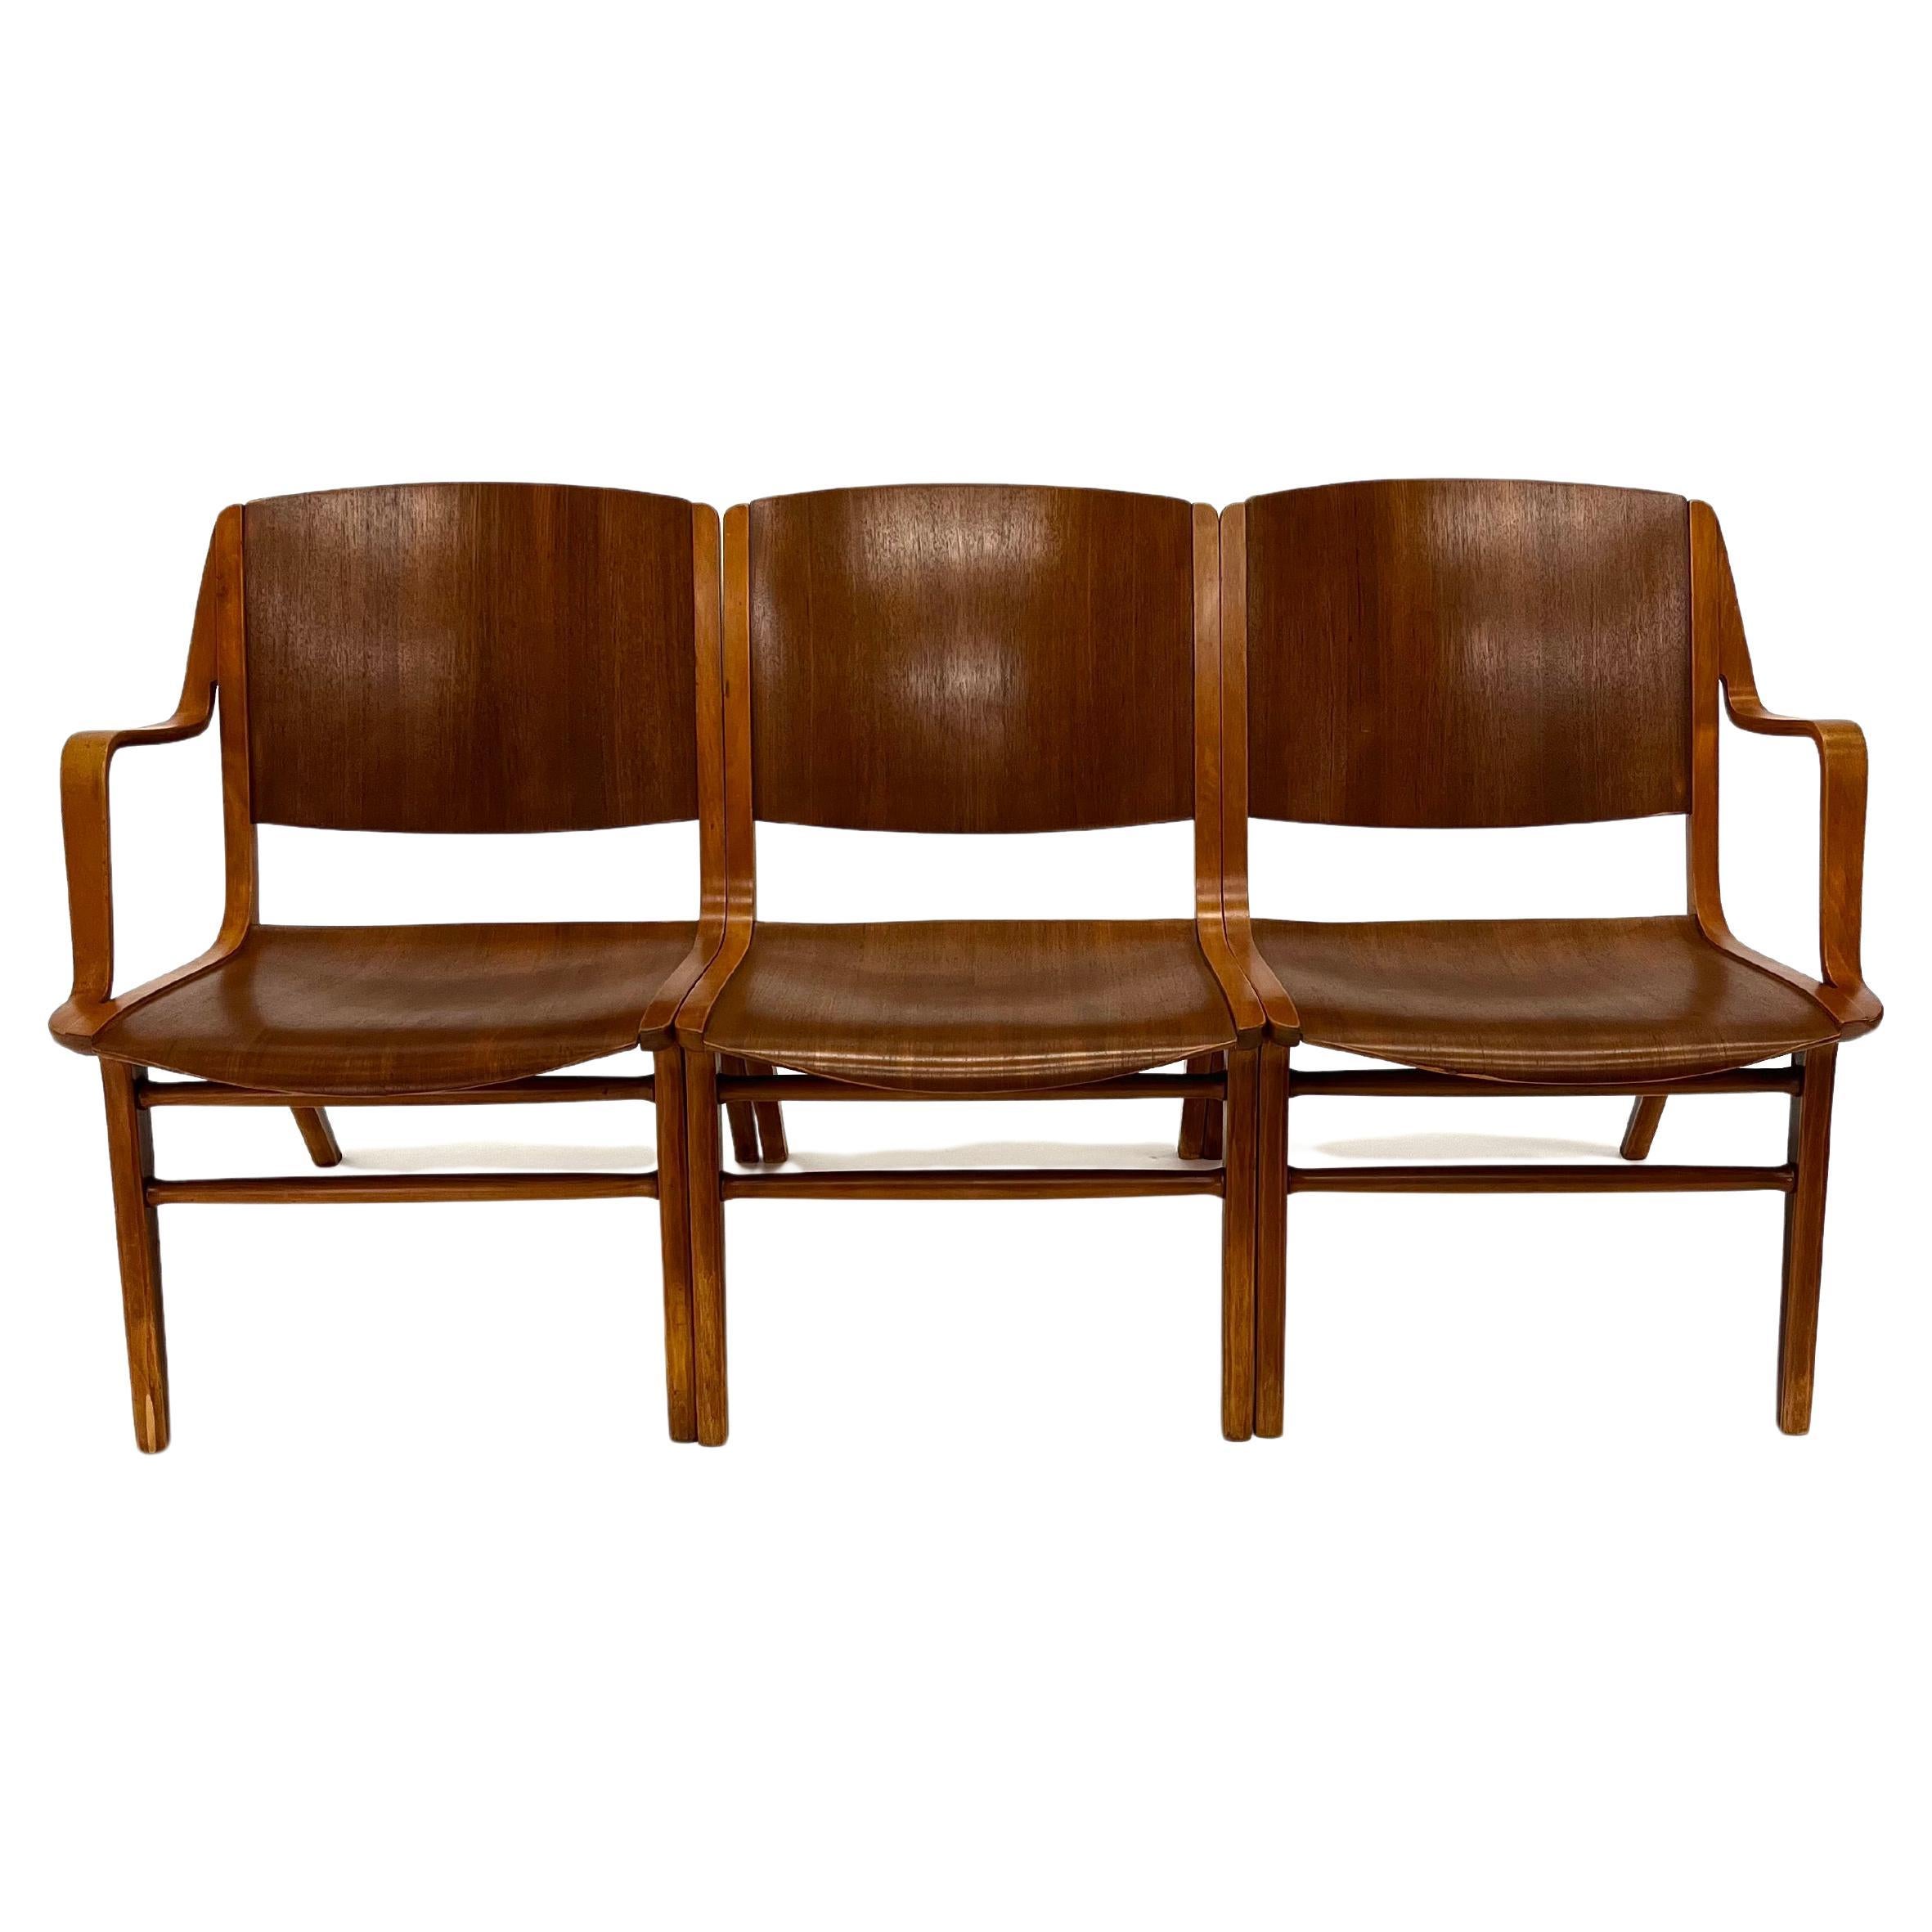 Peter Hvidt und Orla Molgaard Dreiteilige Bank aus Mahagoni und Birke. Kann in verschiedenen Konfigurationen verwendet werden: als zwei Stühle mit einem Arm, als einzelner Beistellstuhl, als zweisitzige Bank oder als dreisitzige Bank.

Jeder Stuhl